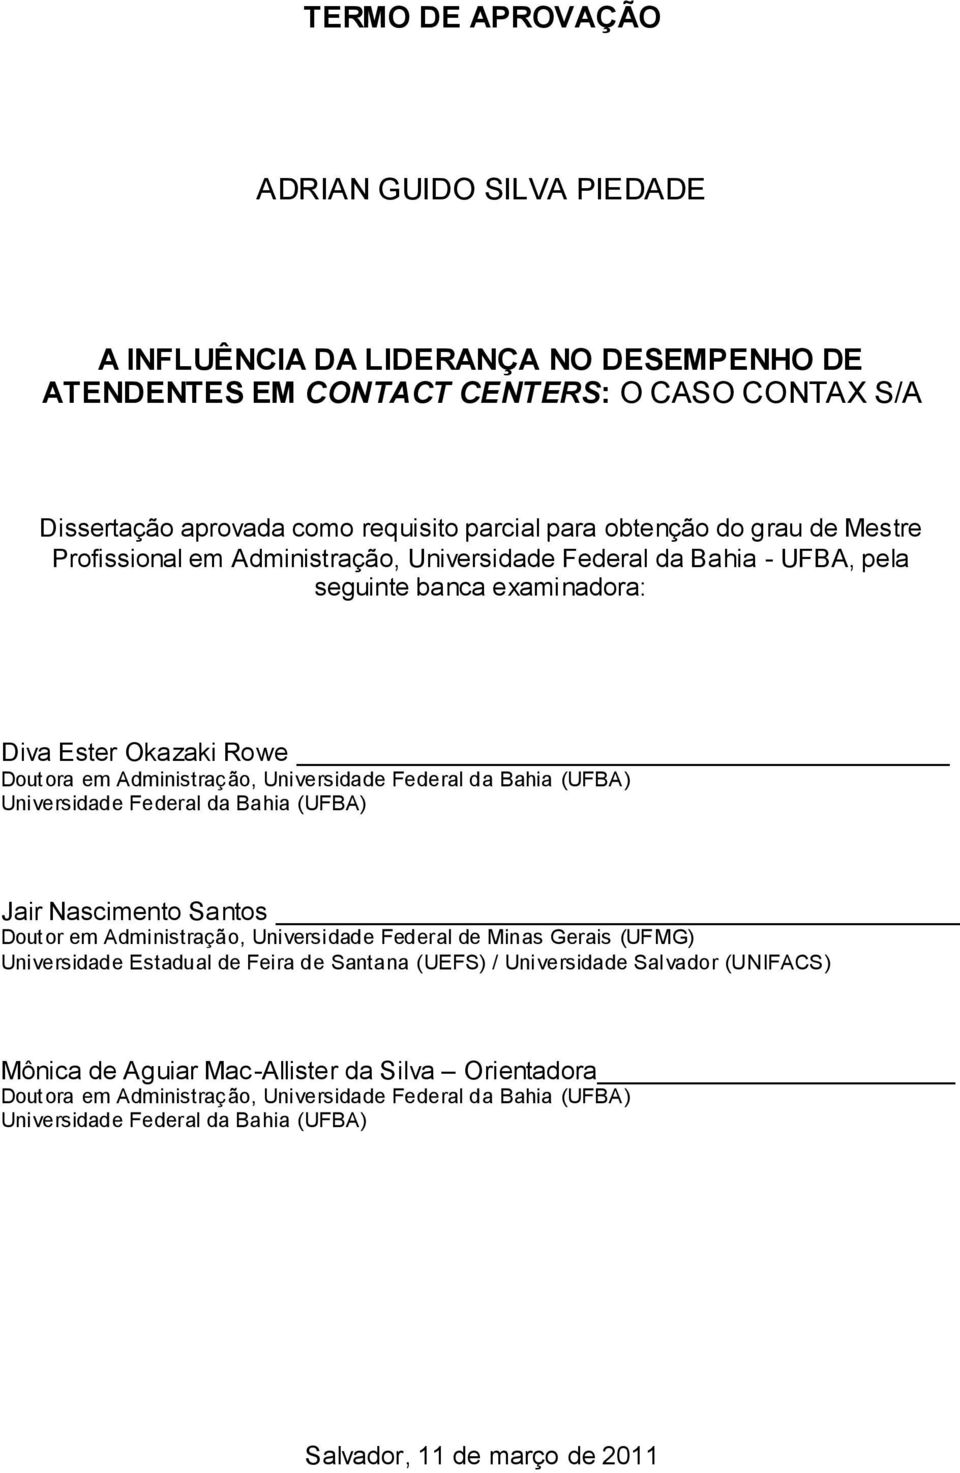 (UFBA) Universidade Federal da Bahia (UFBA) Jair Nascimento Santos Doutor em Administração, Universidade Federal de Minas Gerais (UFMG) Universidade Estadual de Feira de Santana (UEFS) / Universidade